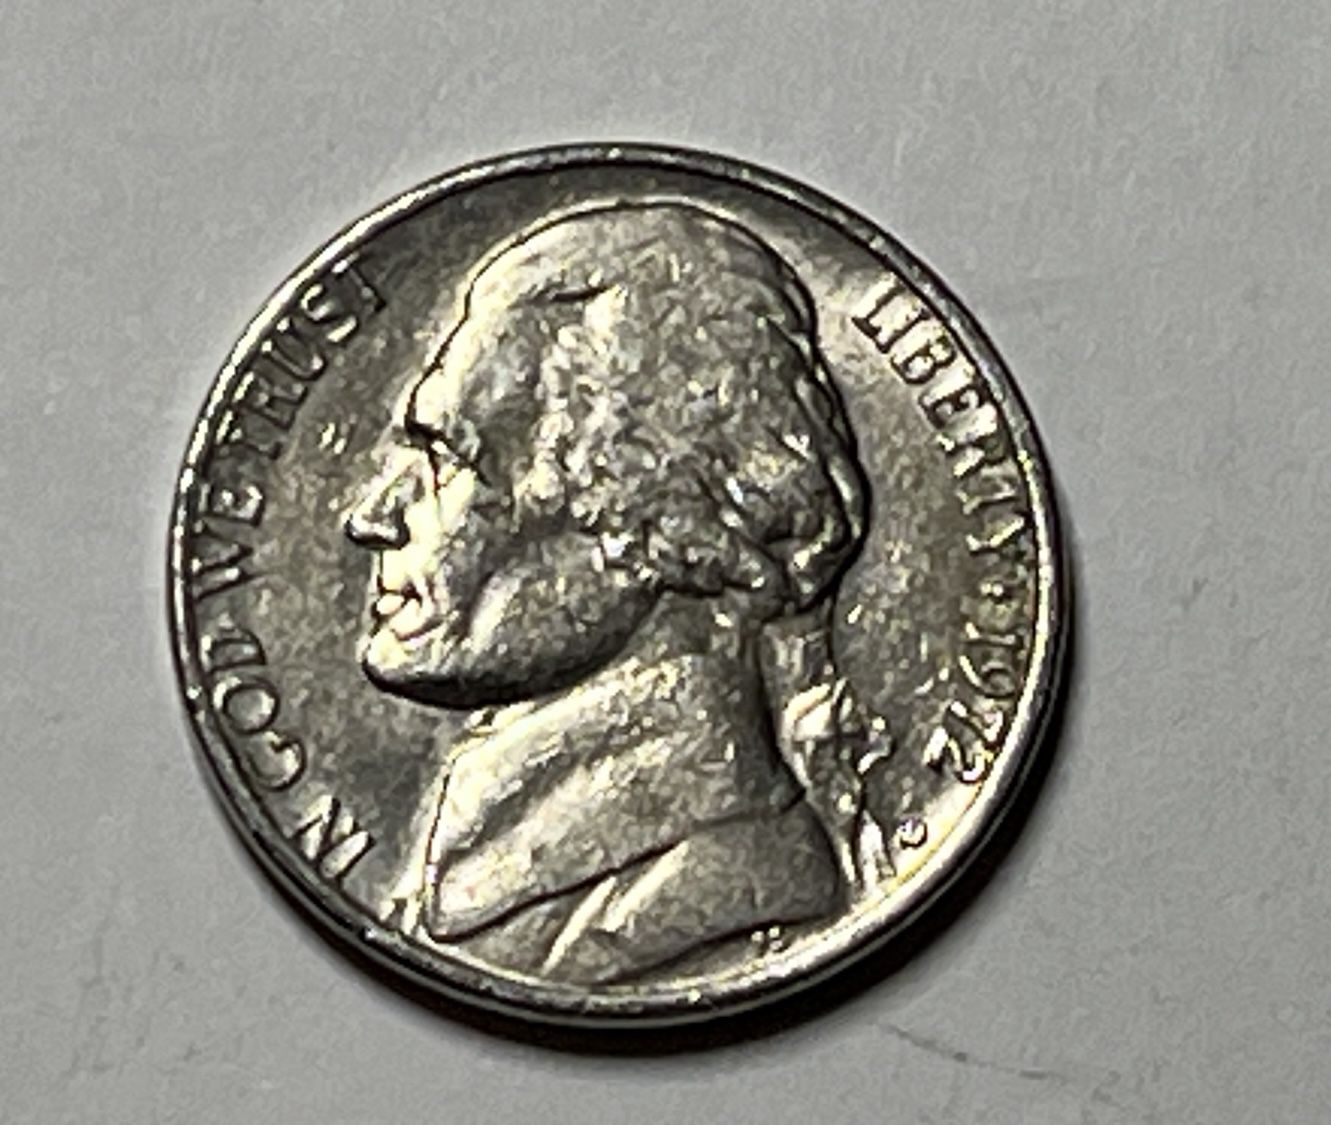 Nickel 1972